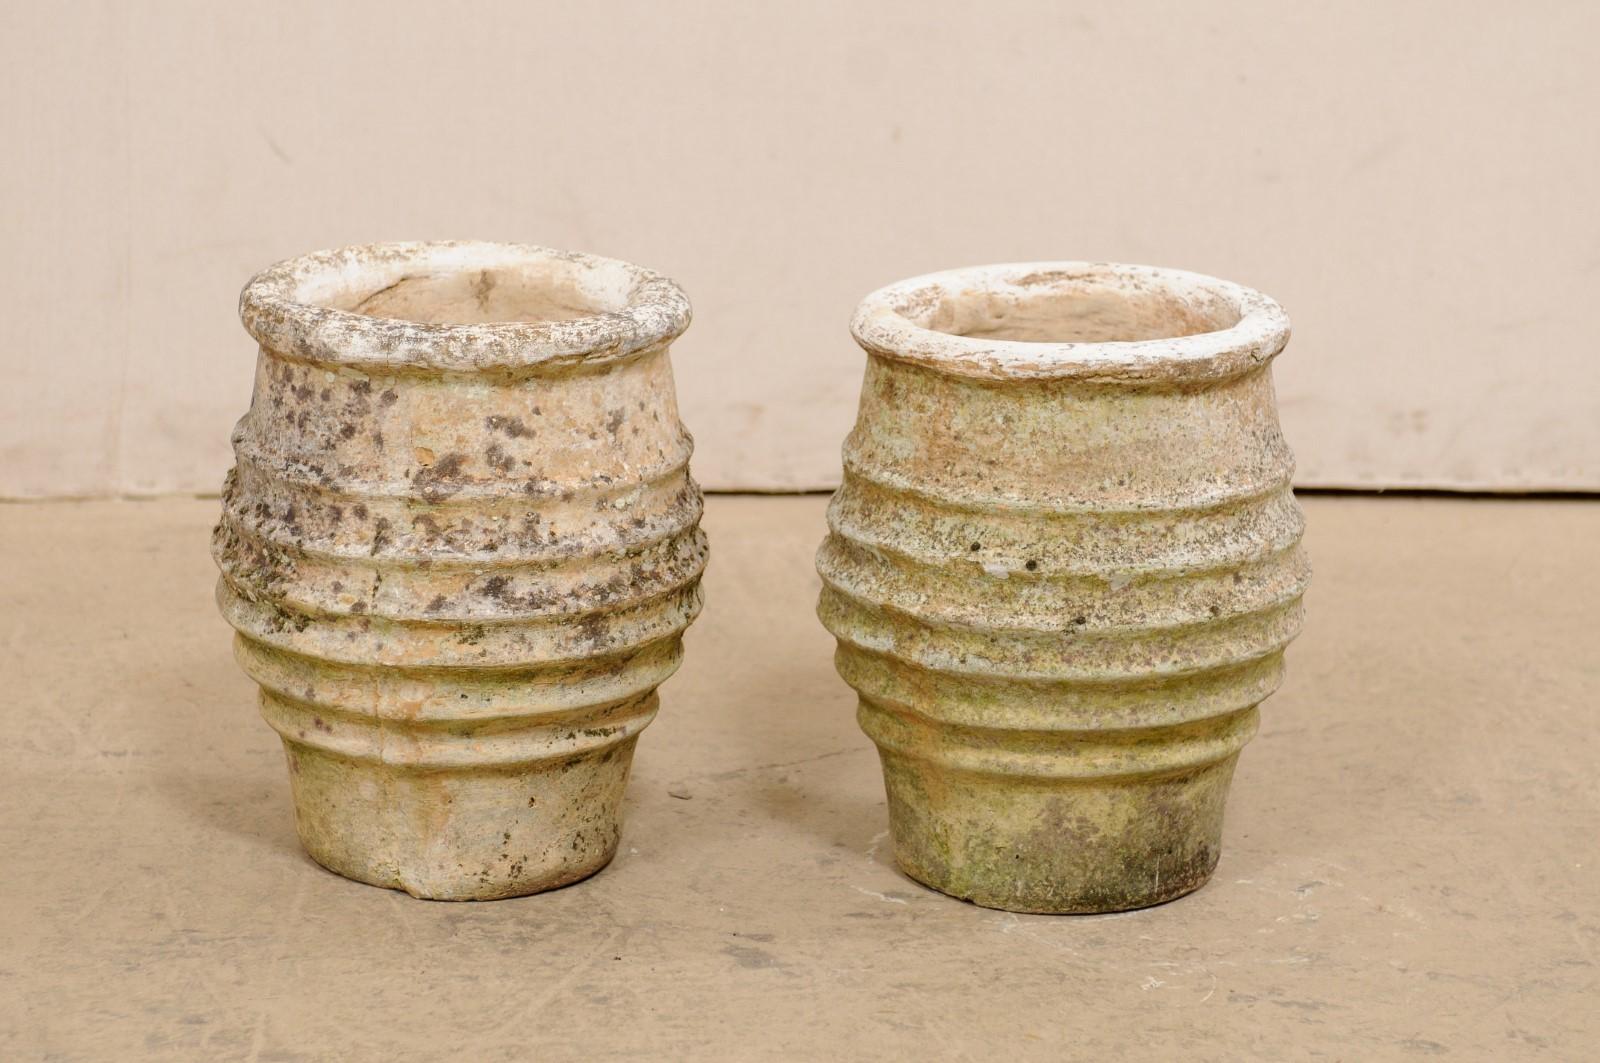 Ein spanisches Paar Gusssteintöpfe aus dem 19. Jahrhundert. Dieses Paar antiker Gefäße aus Spanien, die aus Gussstein gefertigt sind, haben eine runde Form mit einer dicken und ausgeprägten Lippe an der Oberseite, eine schön gerippte Textur um den